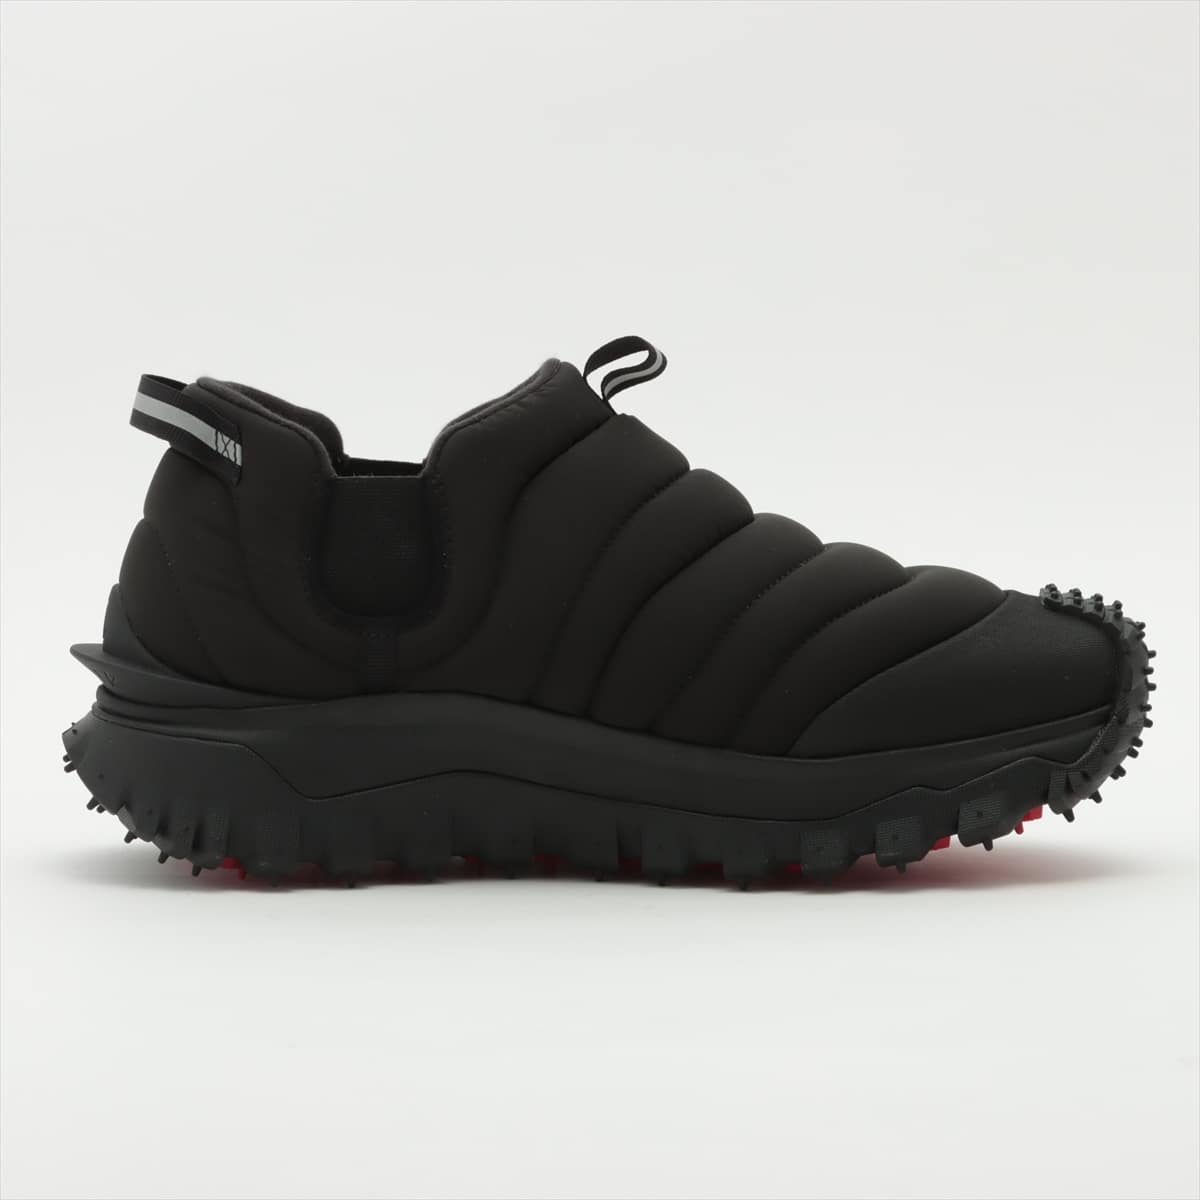 Moncler Fabric Sneakers 45 Men's Black vibram sole APRES TRAIL